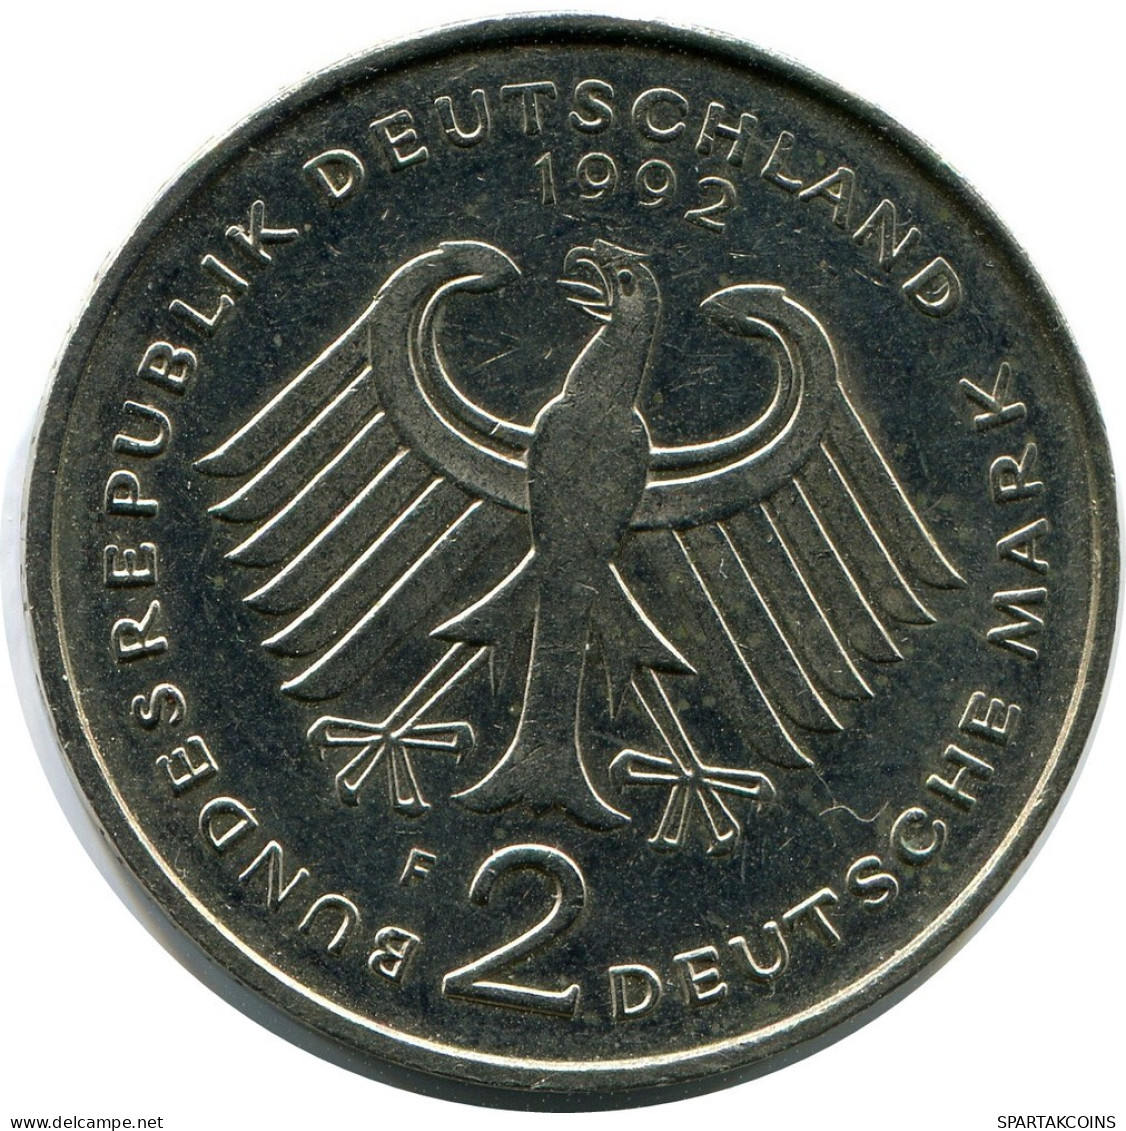 2 DM 1992 F F.J.STRAUS WEST & UNIFIED GERMANY Coin #AZ442.U.A - 2 Mark